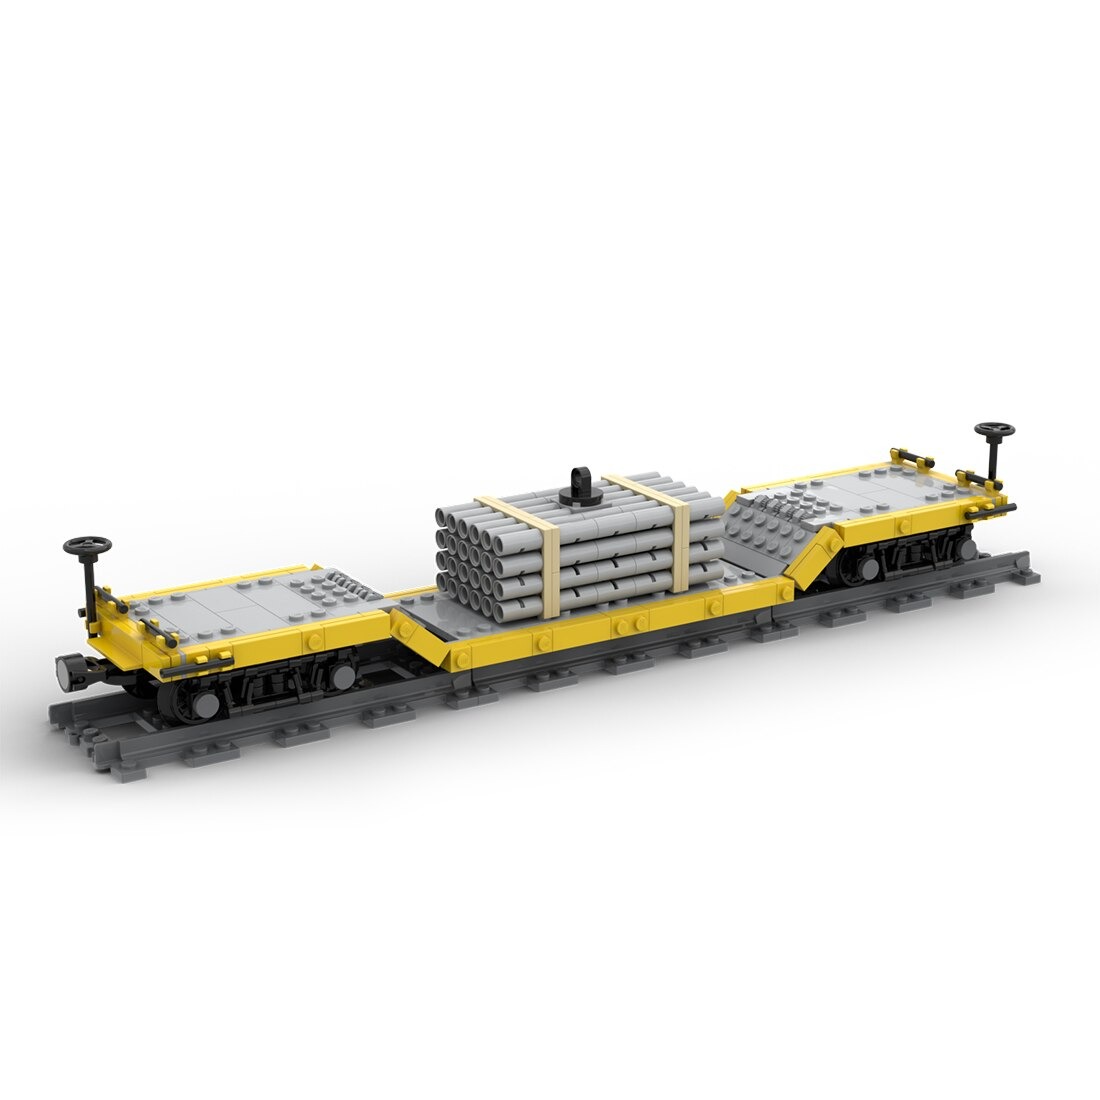 moc 46691 center drop train car model bu main 2 - KAZI Block